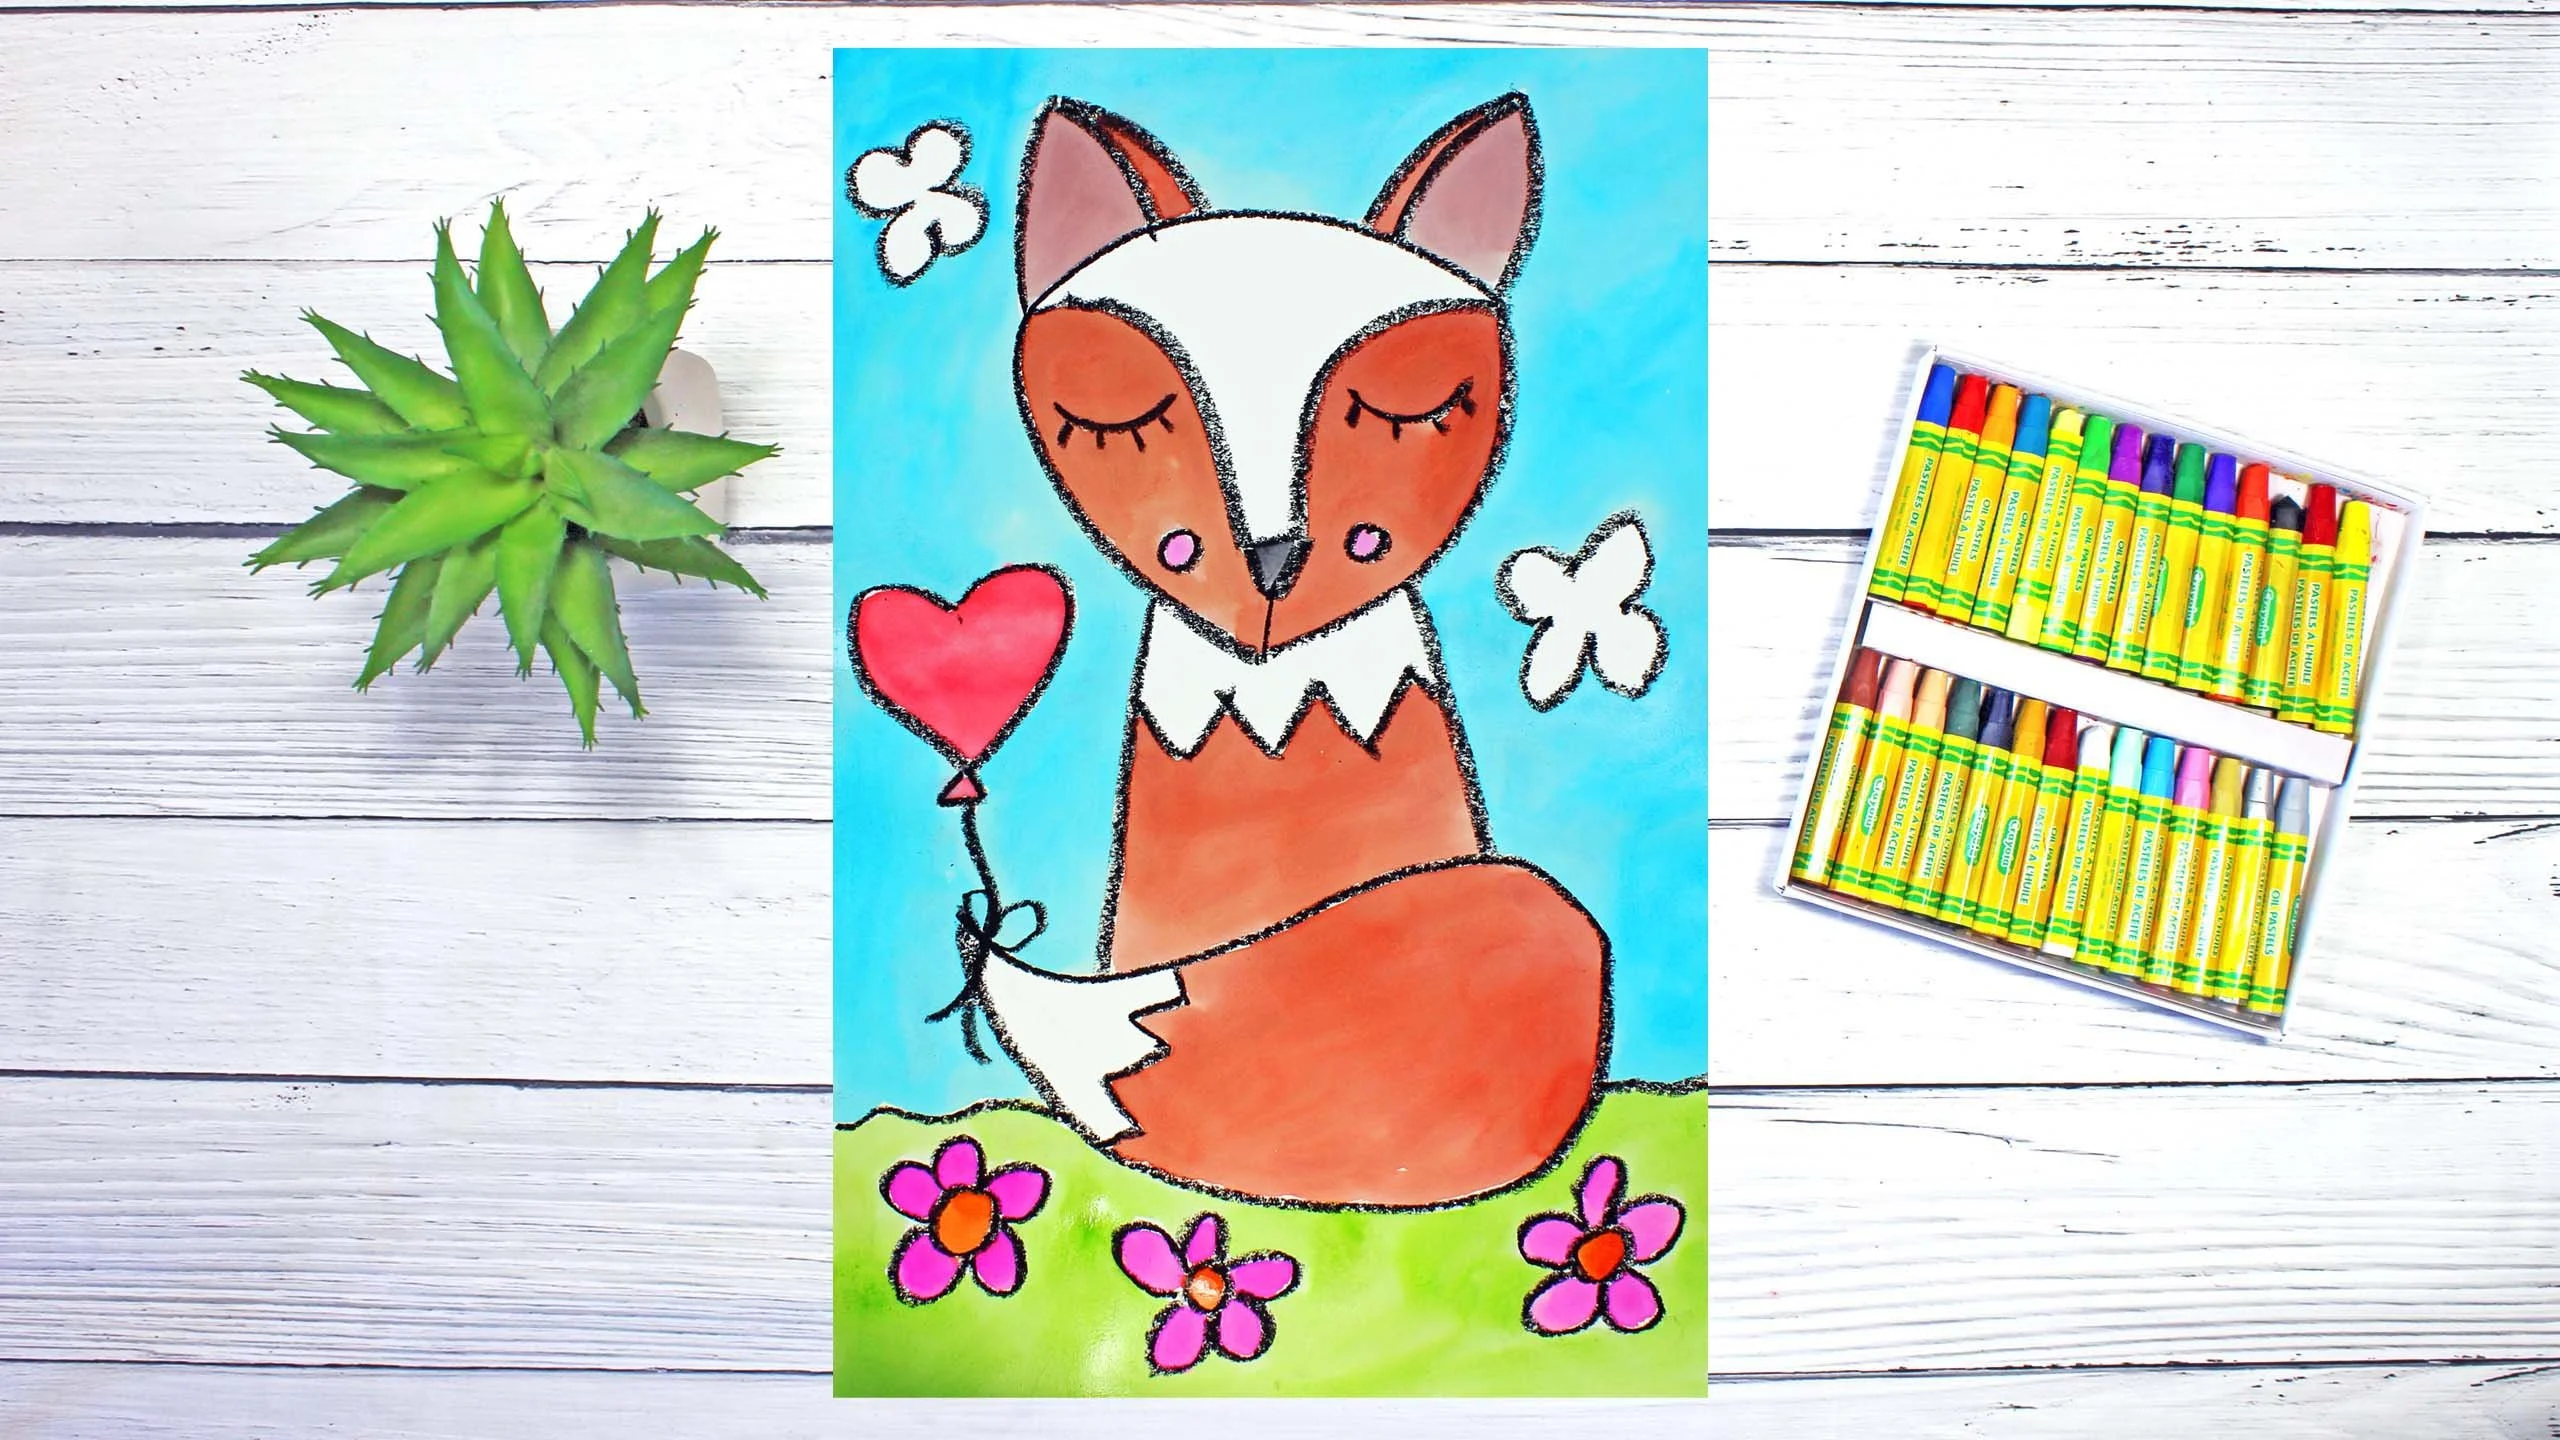 آموزش کلاس هنر برای کودکان و مبتدیان: چگونه یک روباه را با بادکنک قلب بکشیم و آبرنگ بکشیم